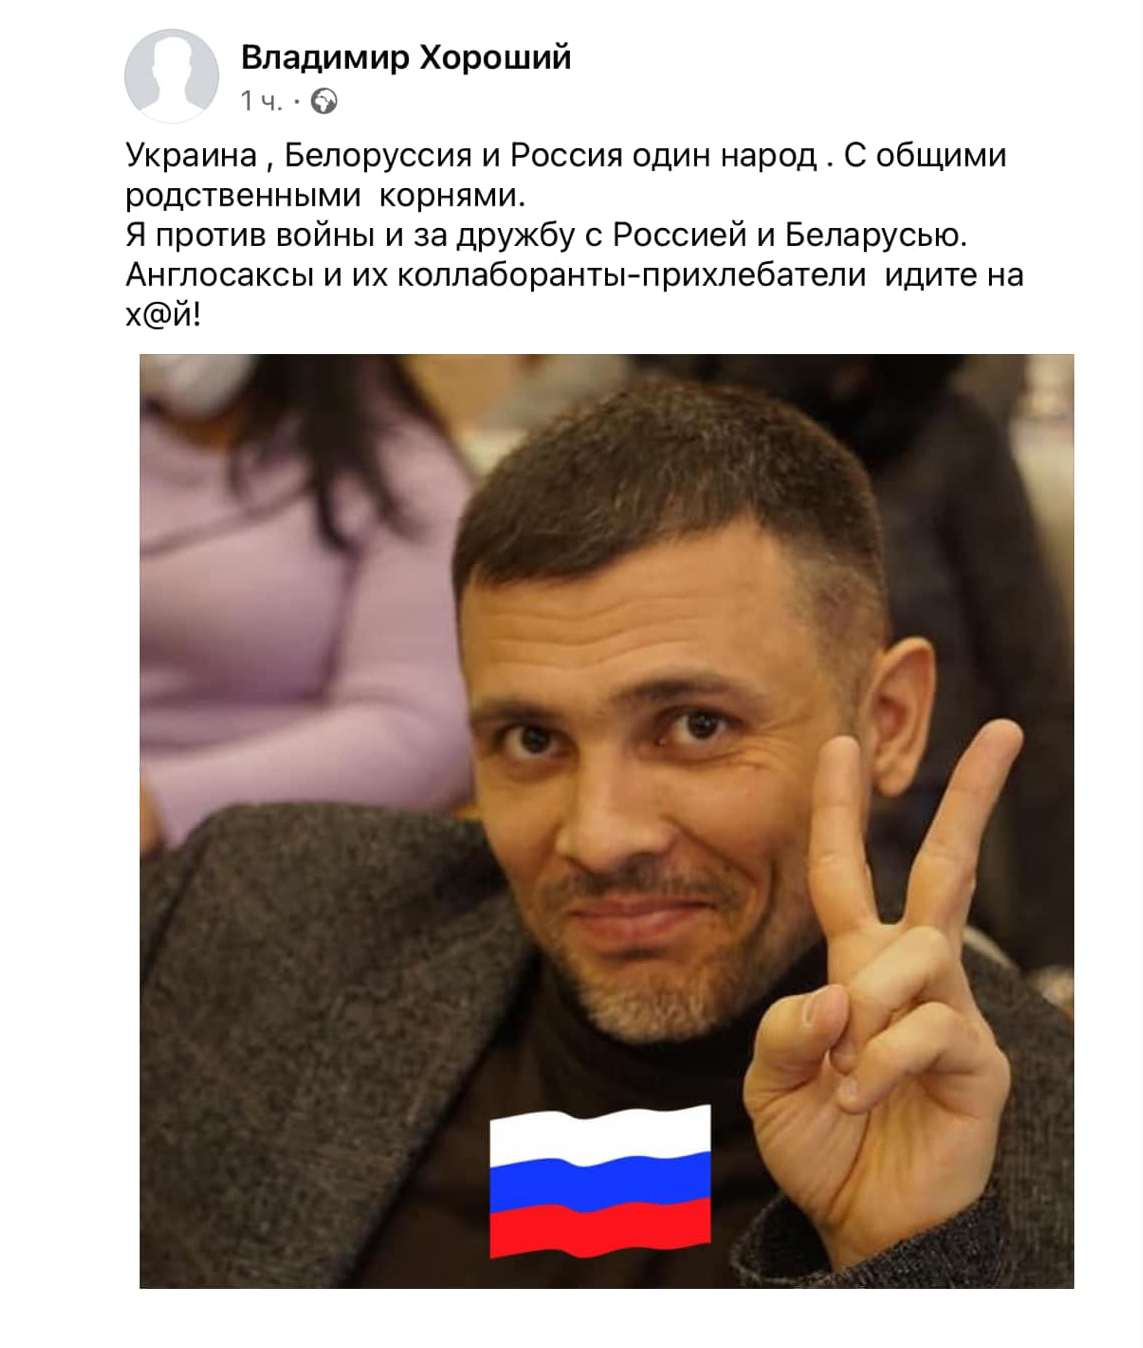 Депутат поставив собі на аватарку прапор Росії.